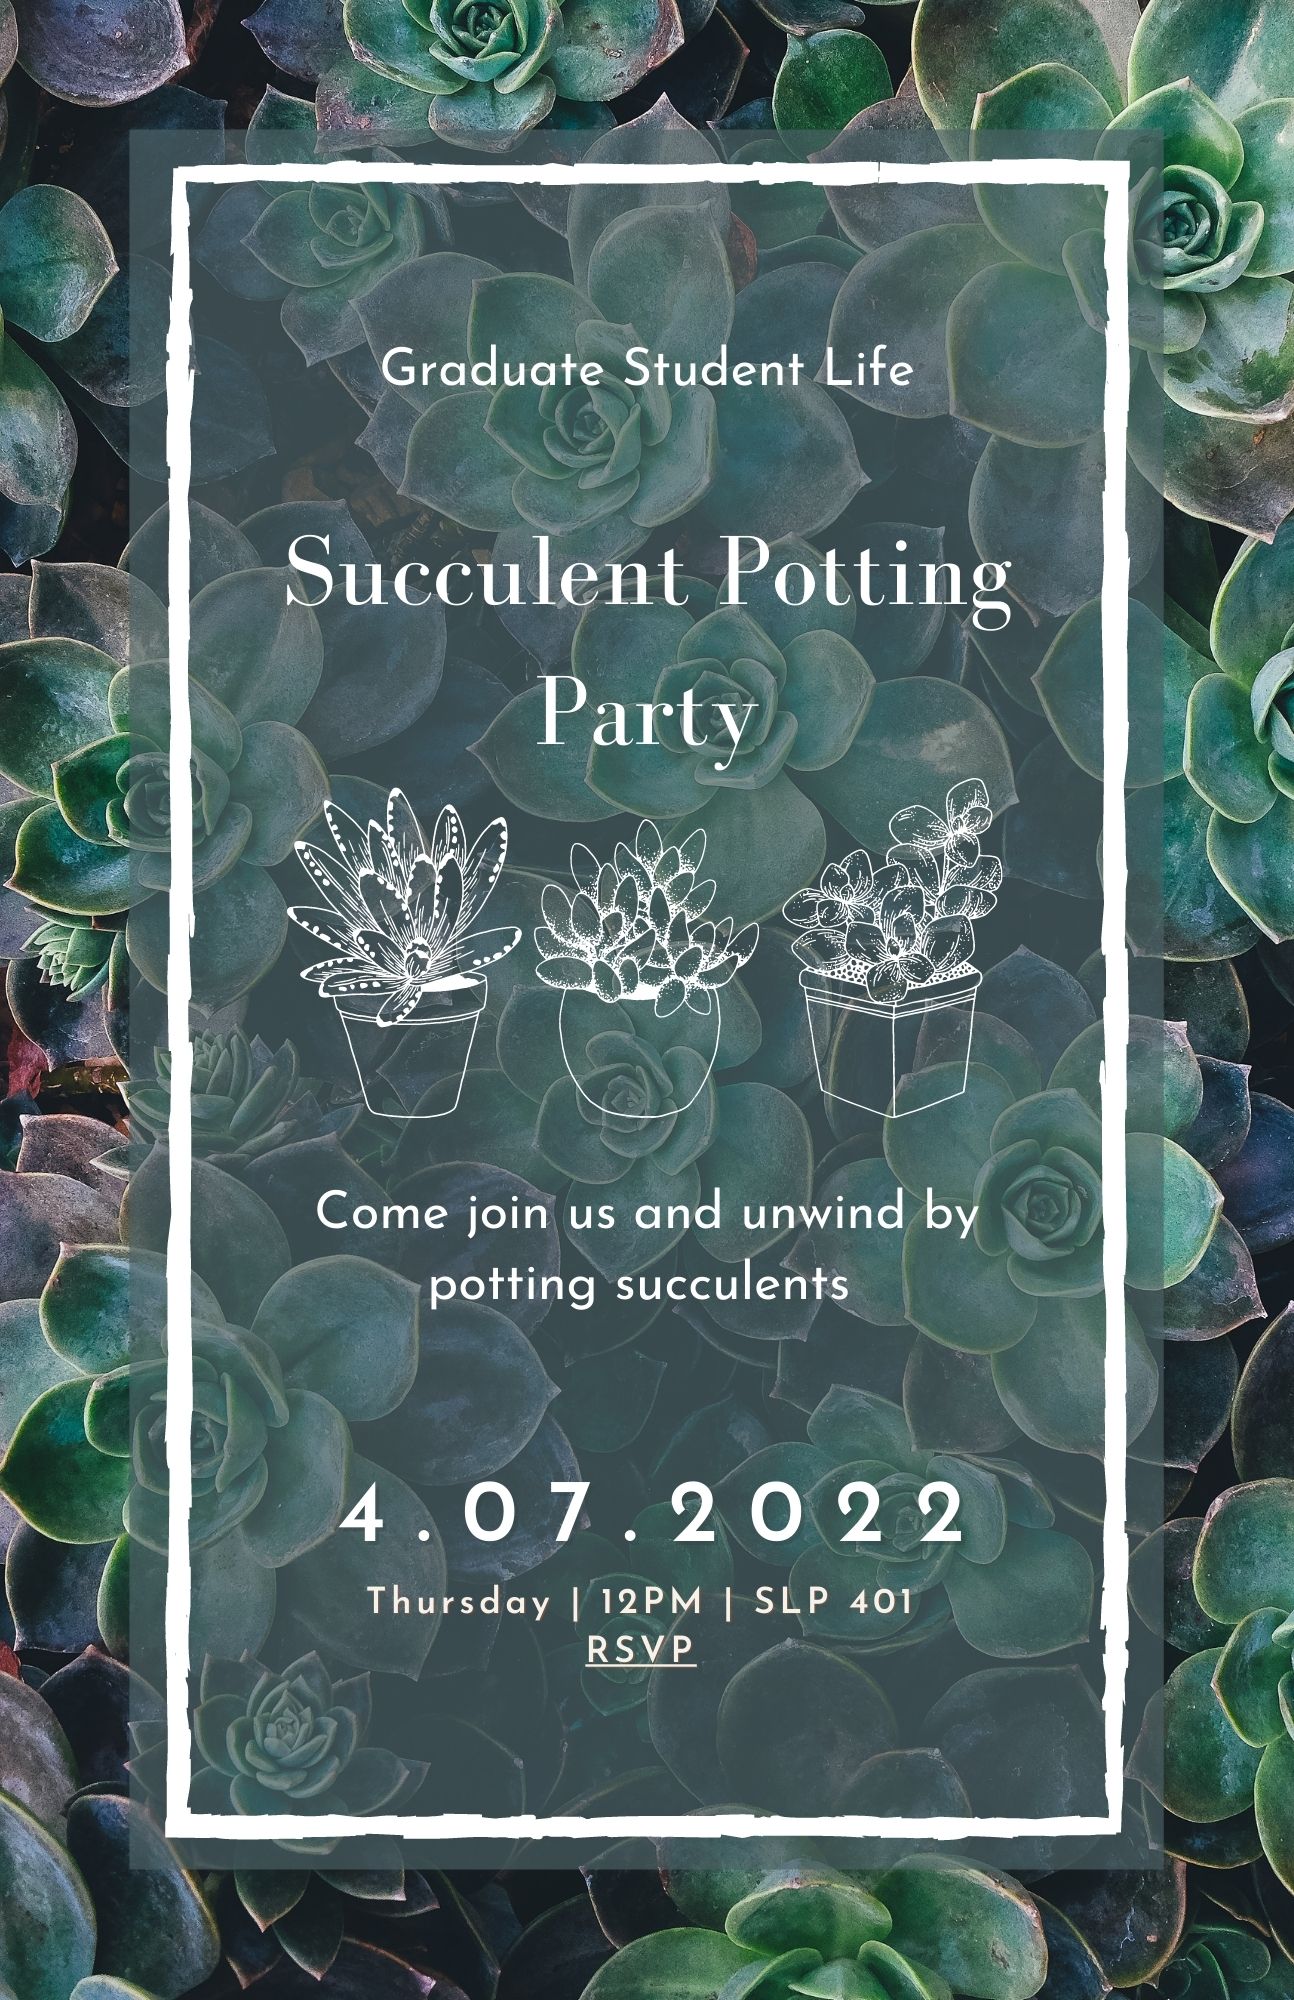 Succulent Potting Party, April 7th, 12pm, SLP 401, https://sandiego.secure.force.com/events#/esr?eid=a0K4y00000YS5RTEA1